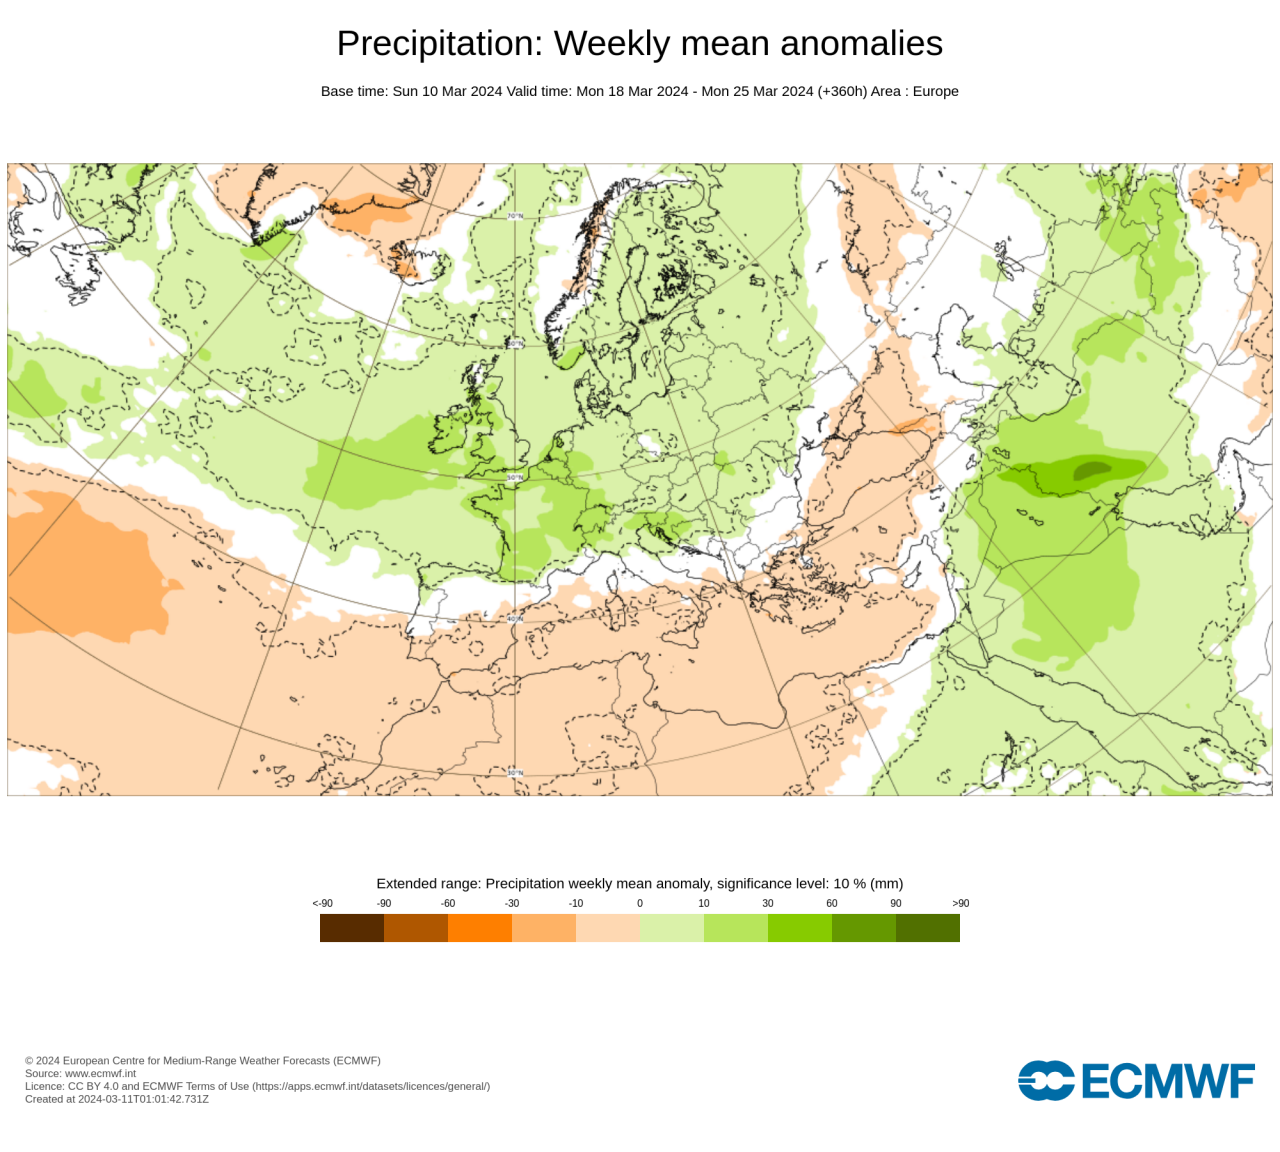 anomalie precipitazioni secondo Ecmwf